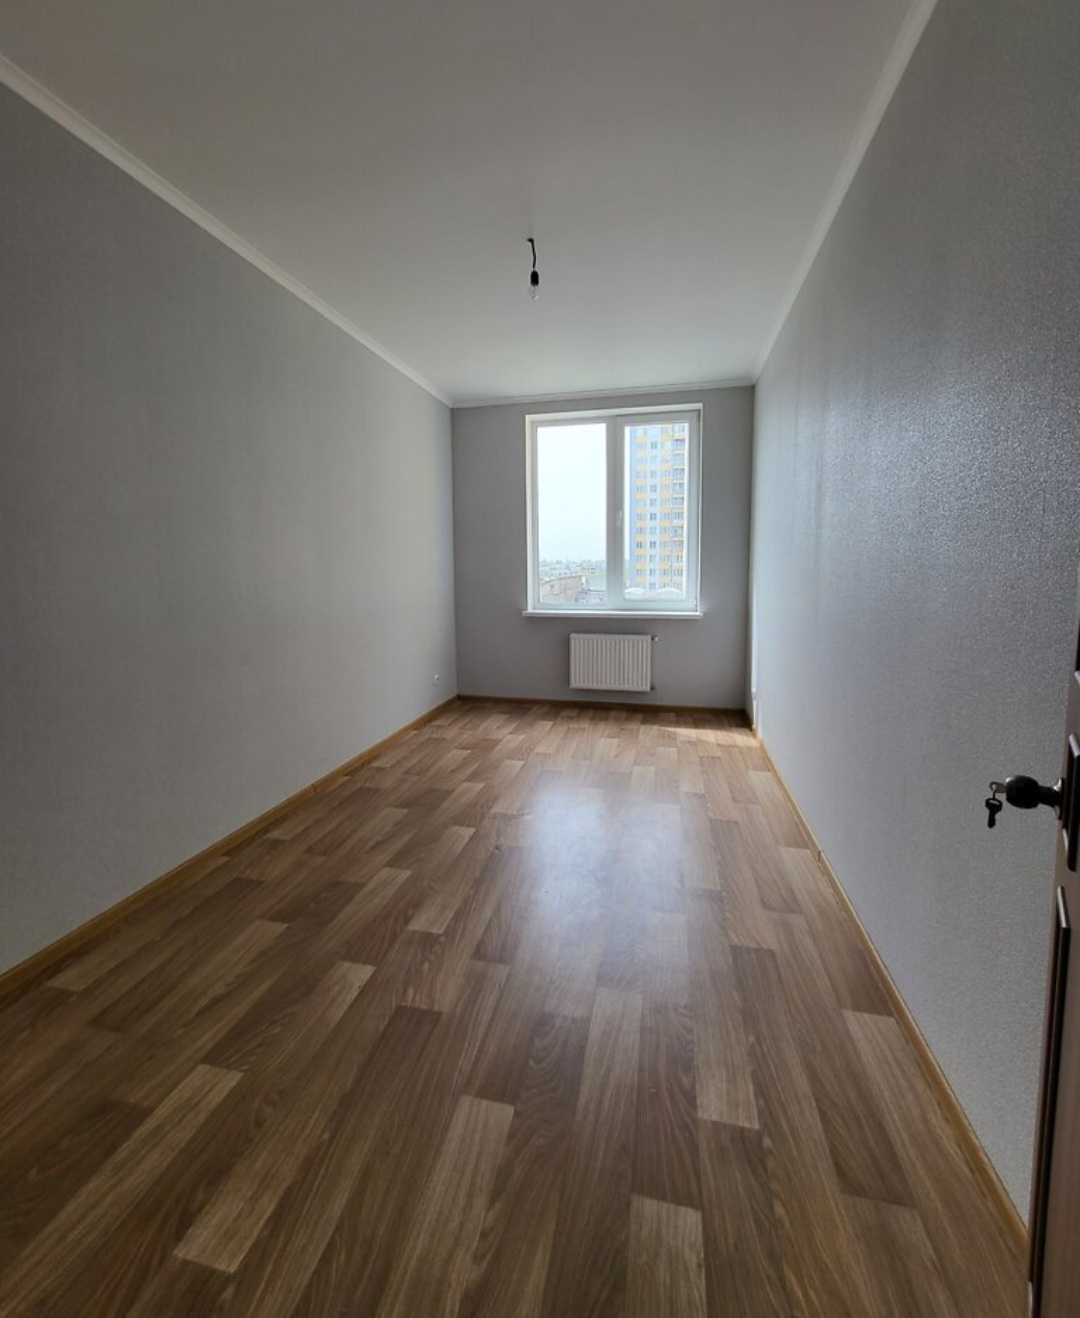 Продам 2-х кімнатну квартиру з ремонтом в центрі